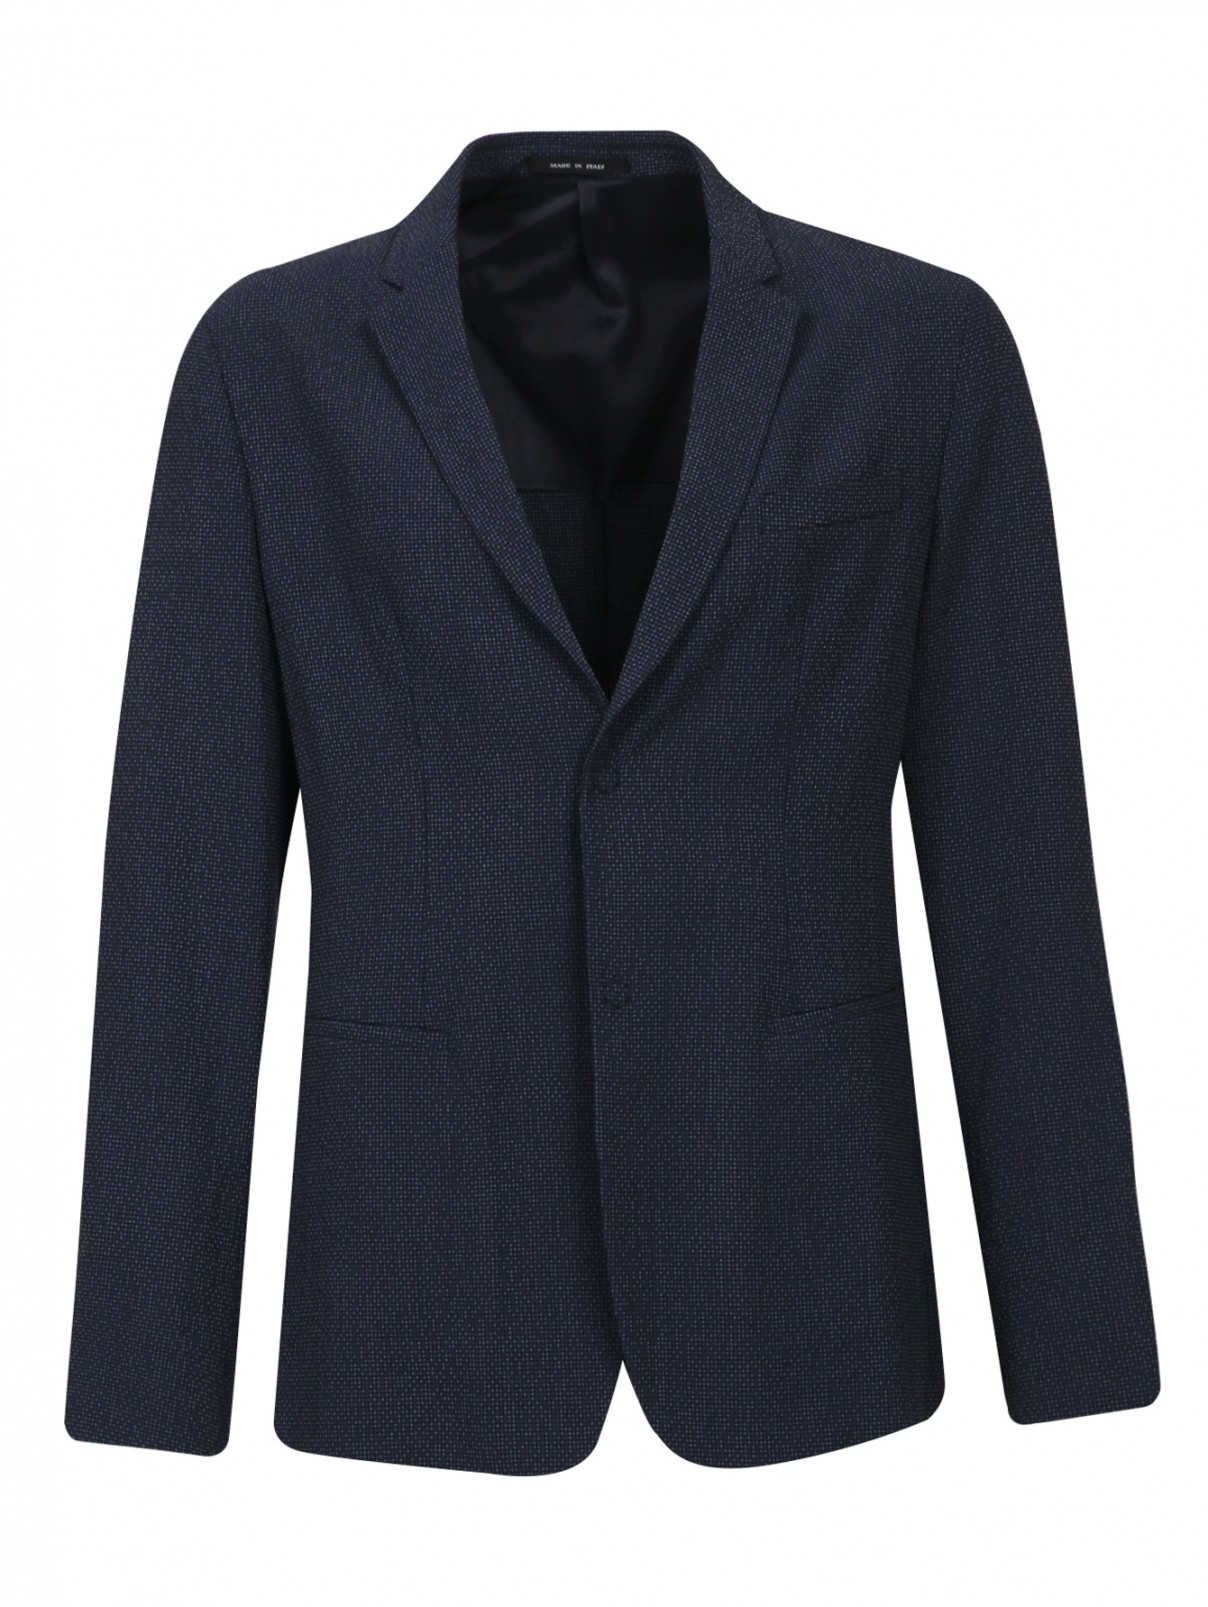 Пиджак из шерсти и шелка Emporio Armani  –  Общий вид  – Цвет:  Серый